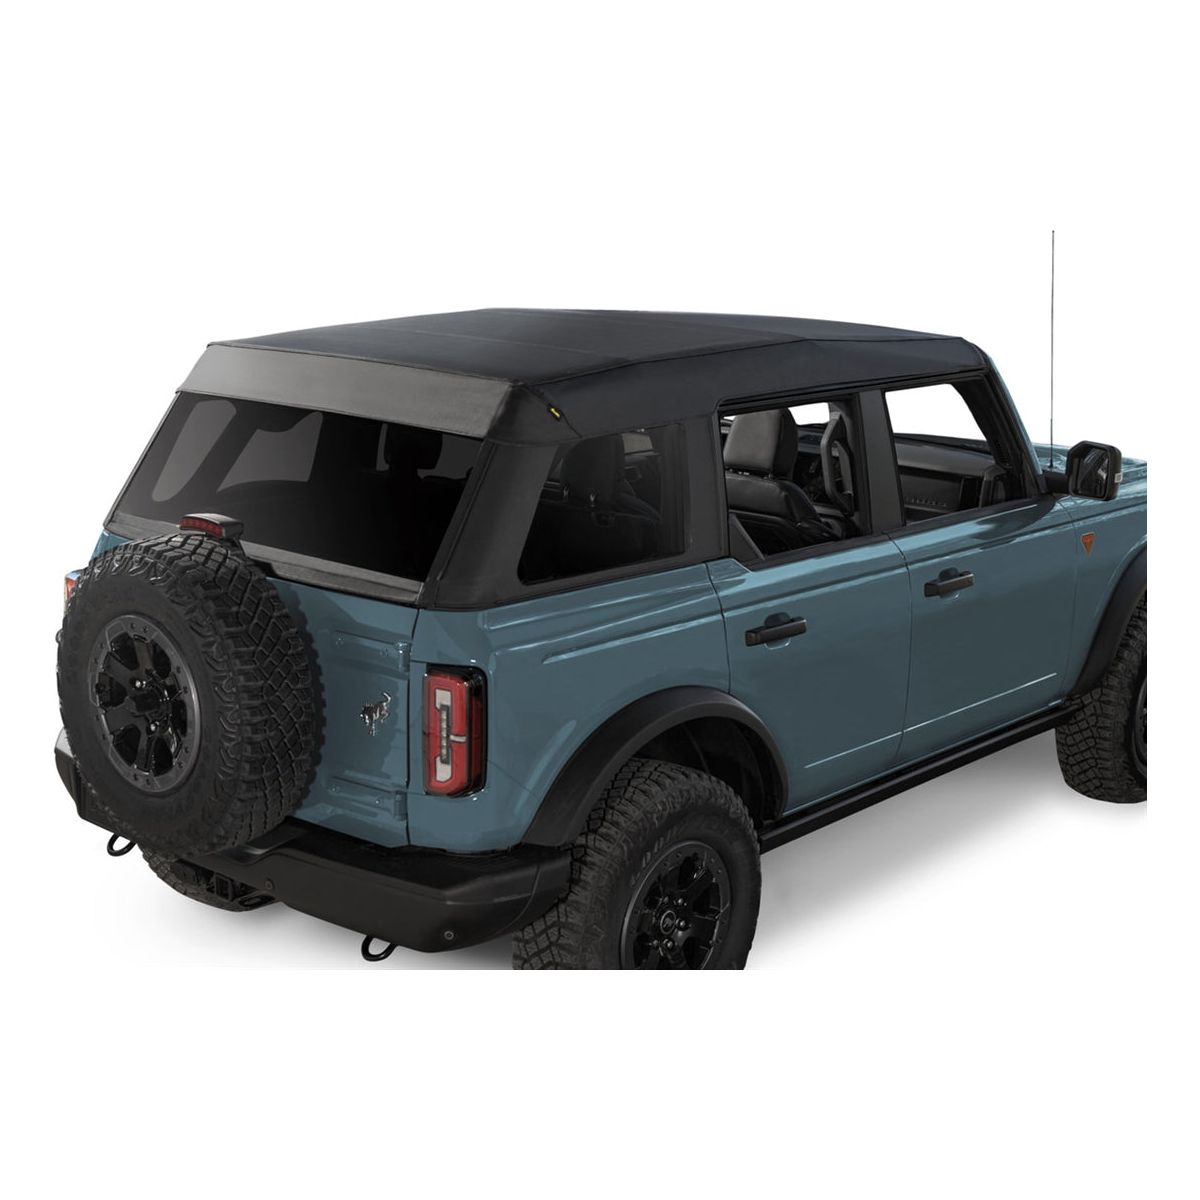 Bestop Bronco Trektop Soft Top (Black Twill) for Ford Bronco 4 Door Models - Exc. Raptor